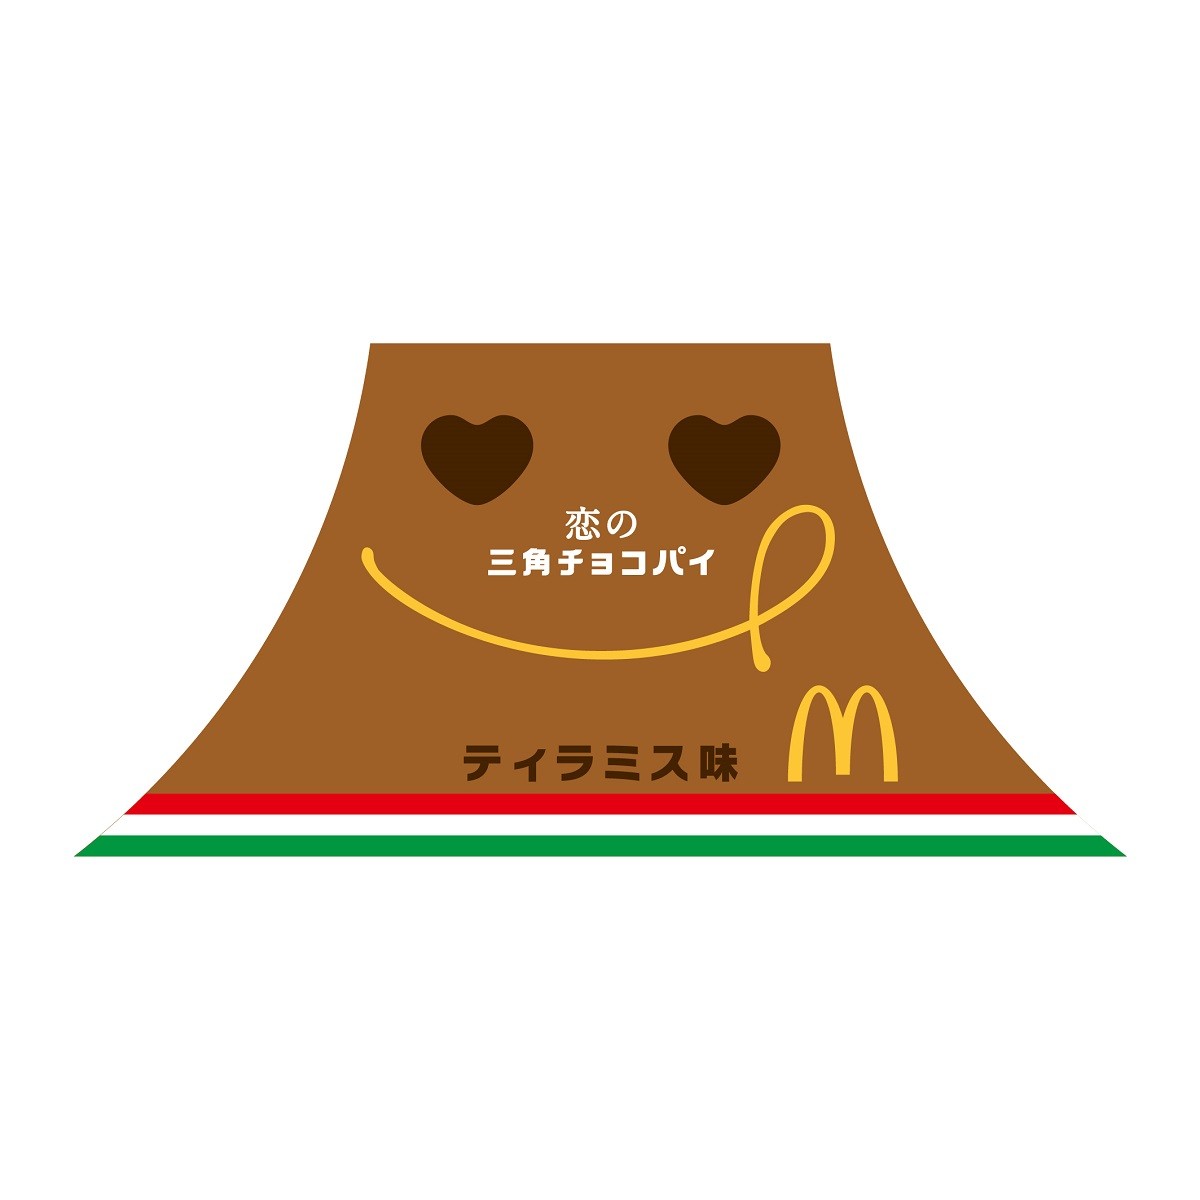 「恋の三角チョコパイ ティラミス味」